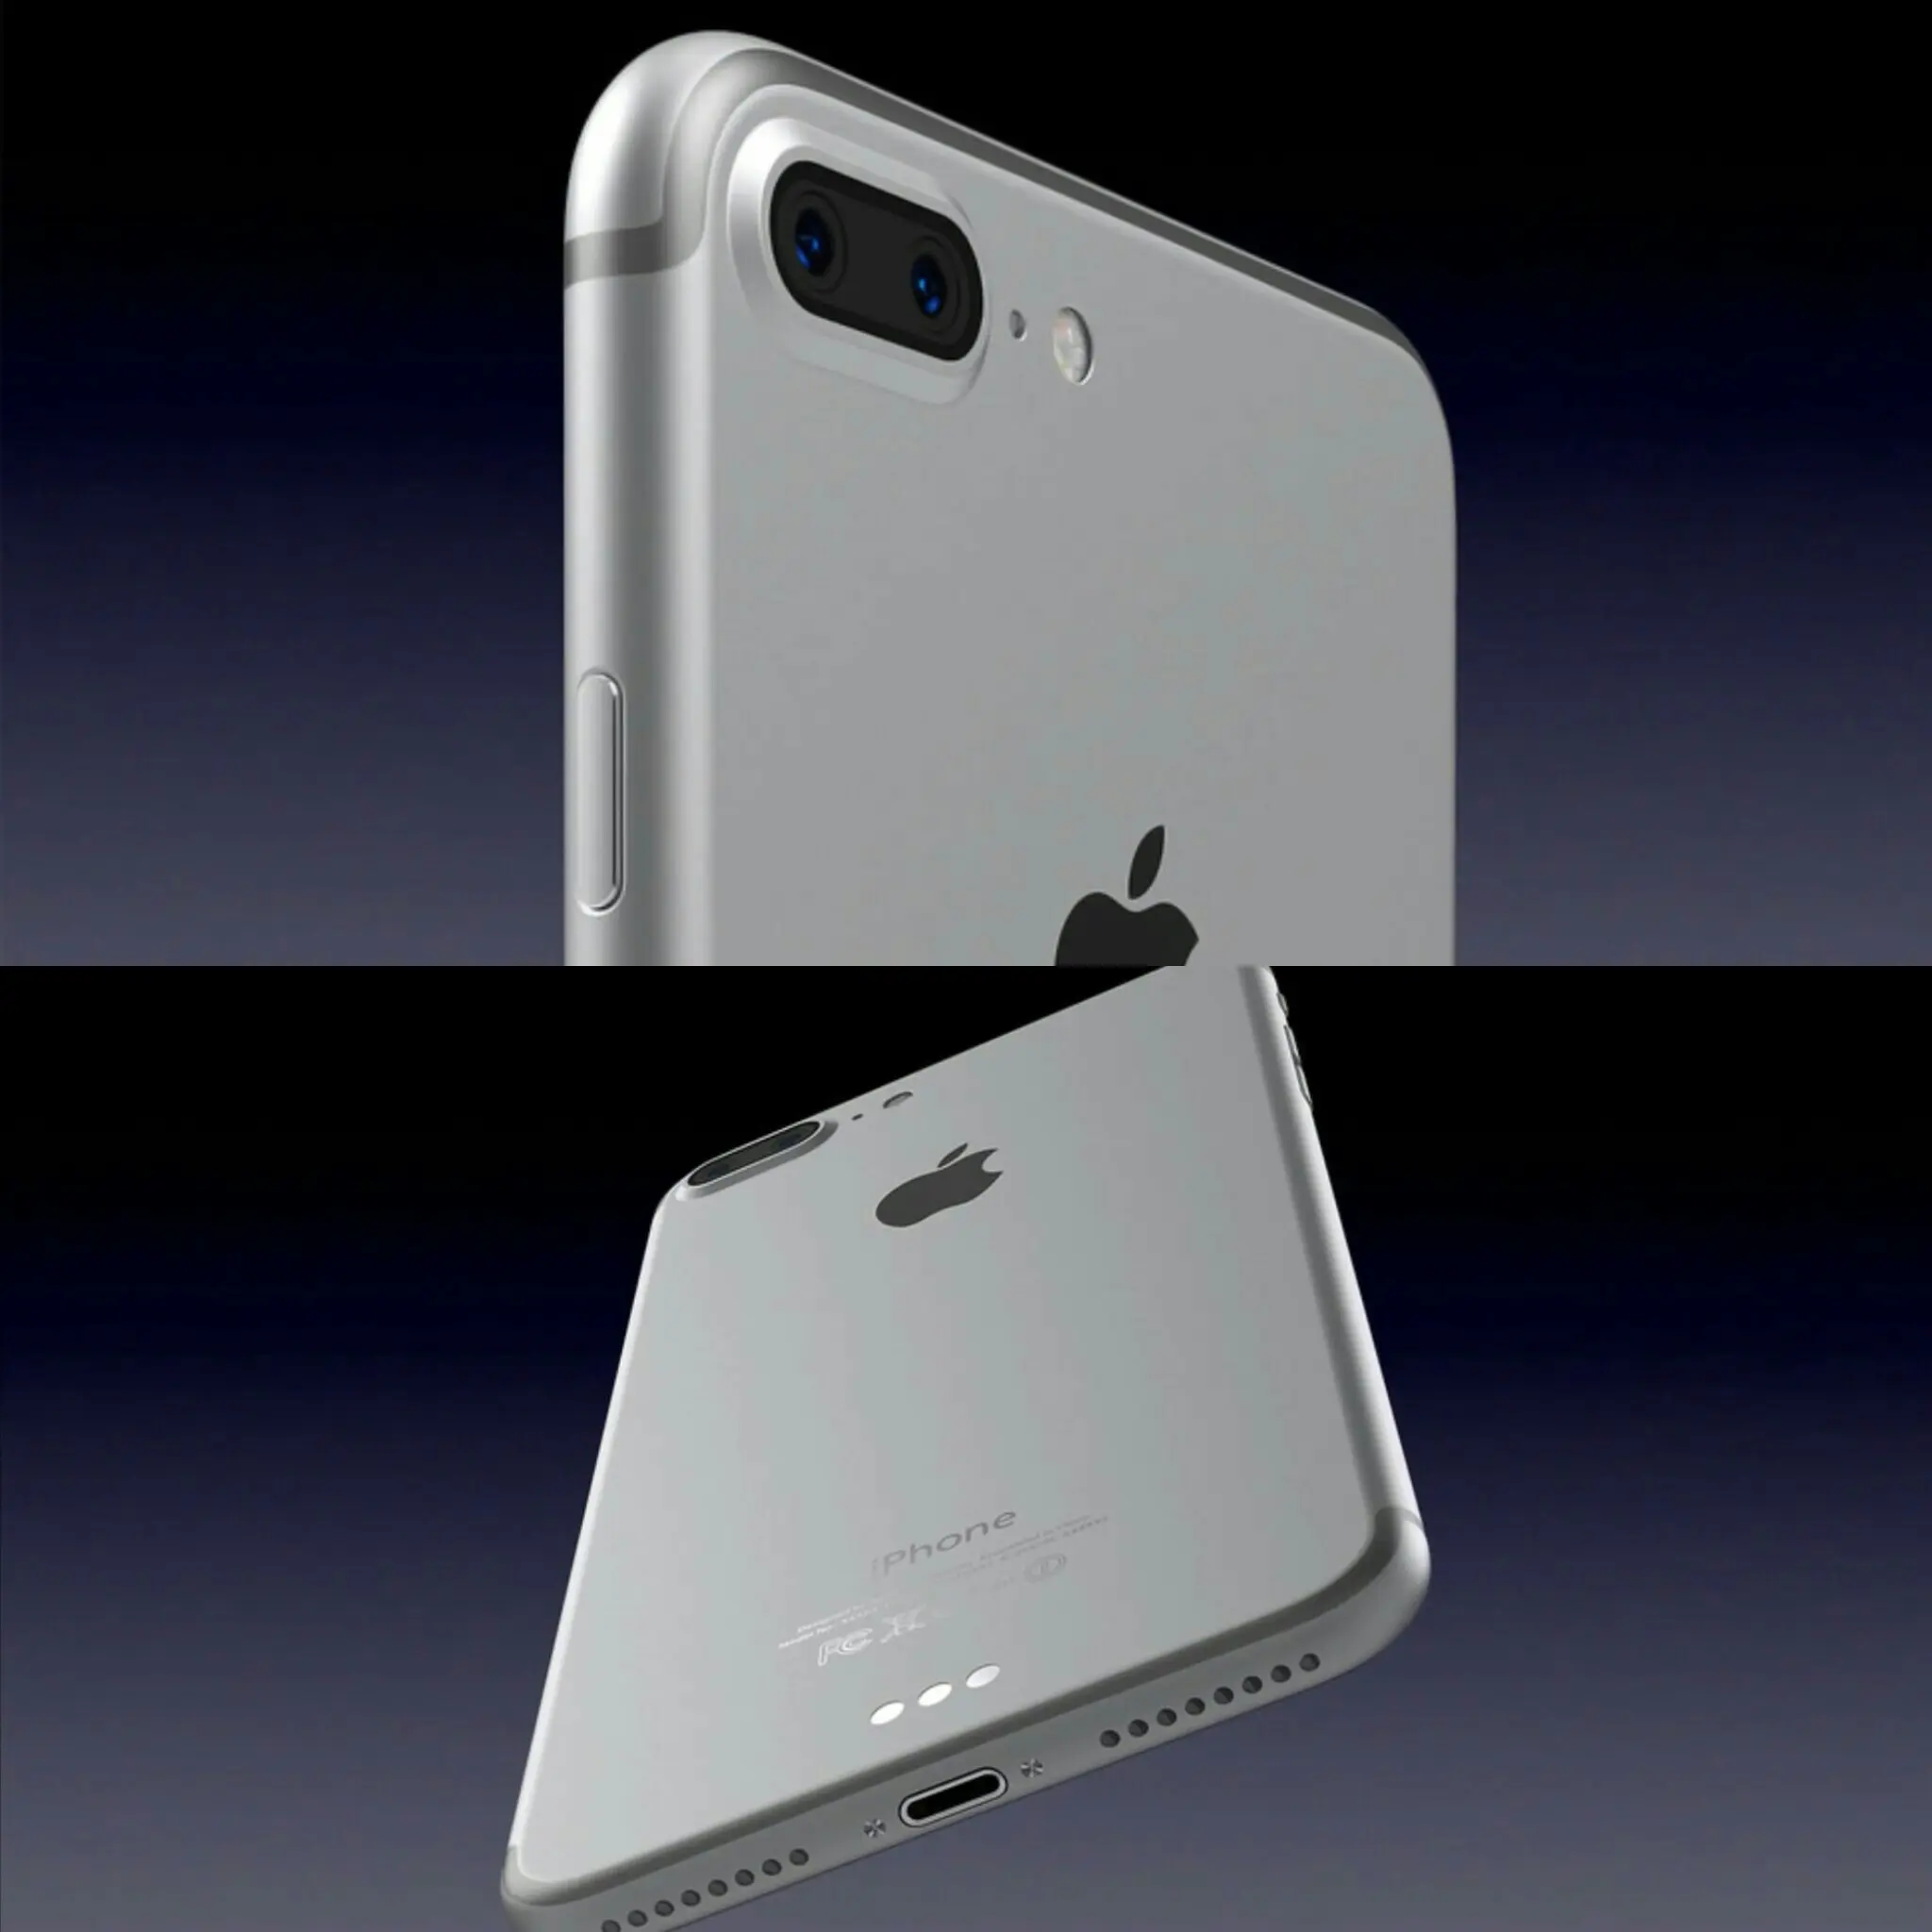 Especificaciones del iPhone 7 muestran mejor batería